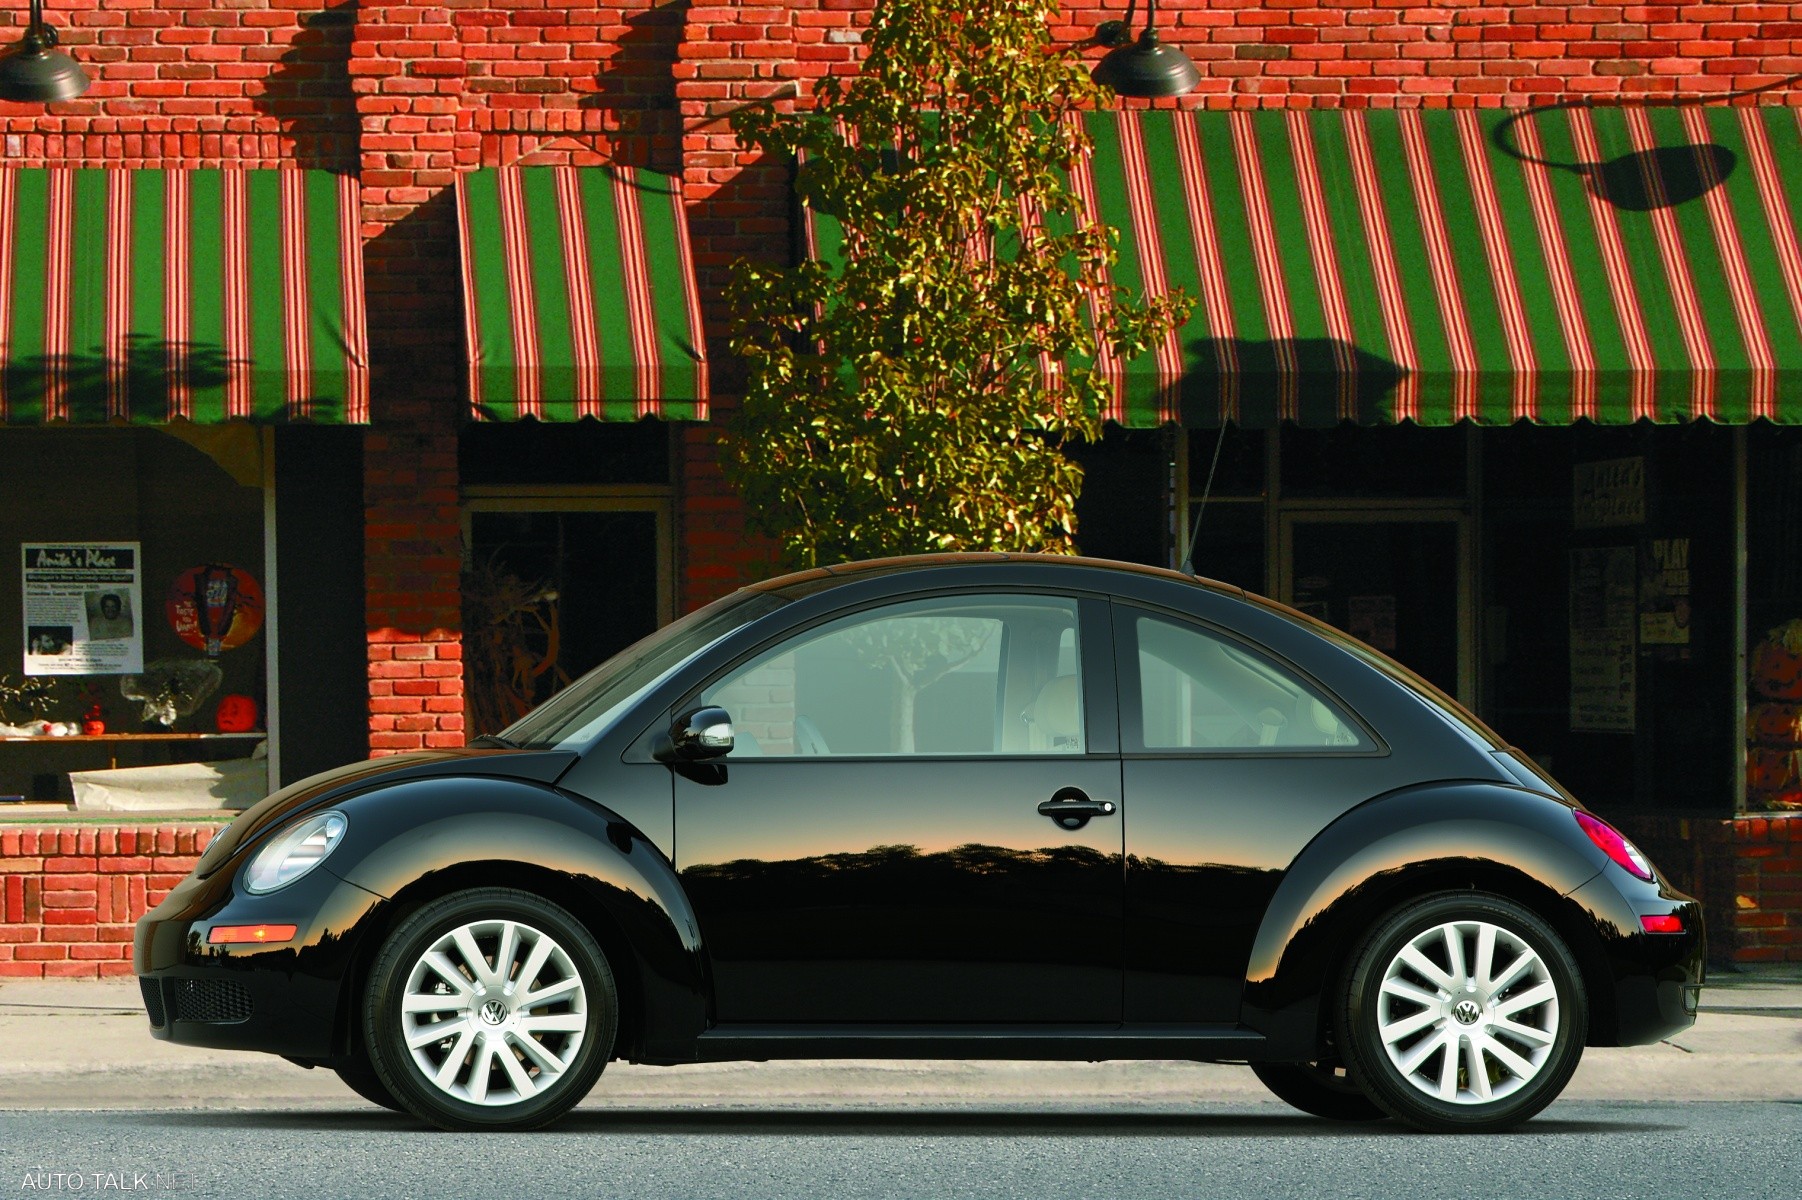 2008 Volkswagen New Beetle